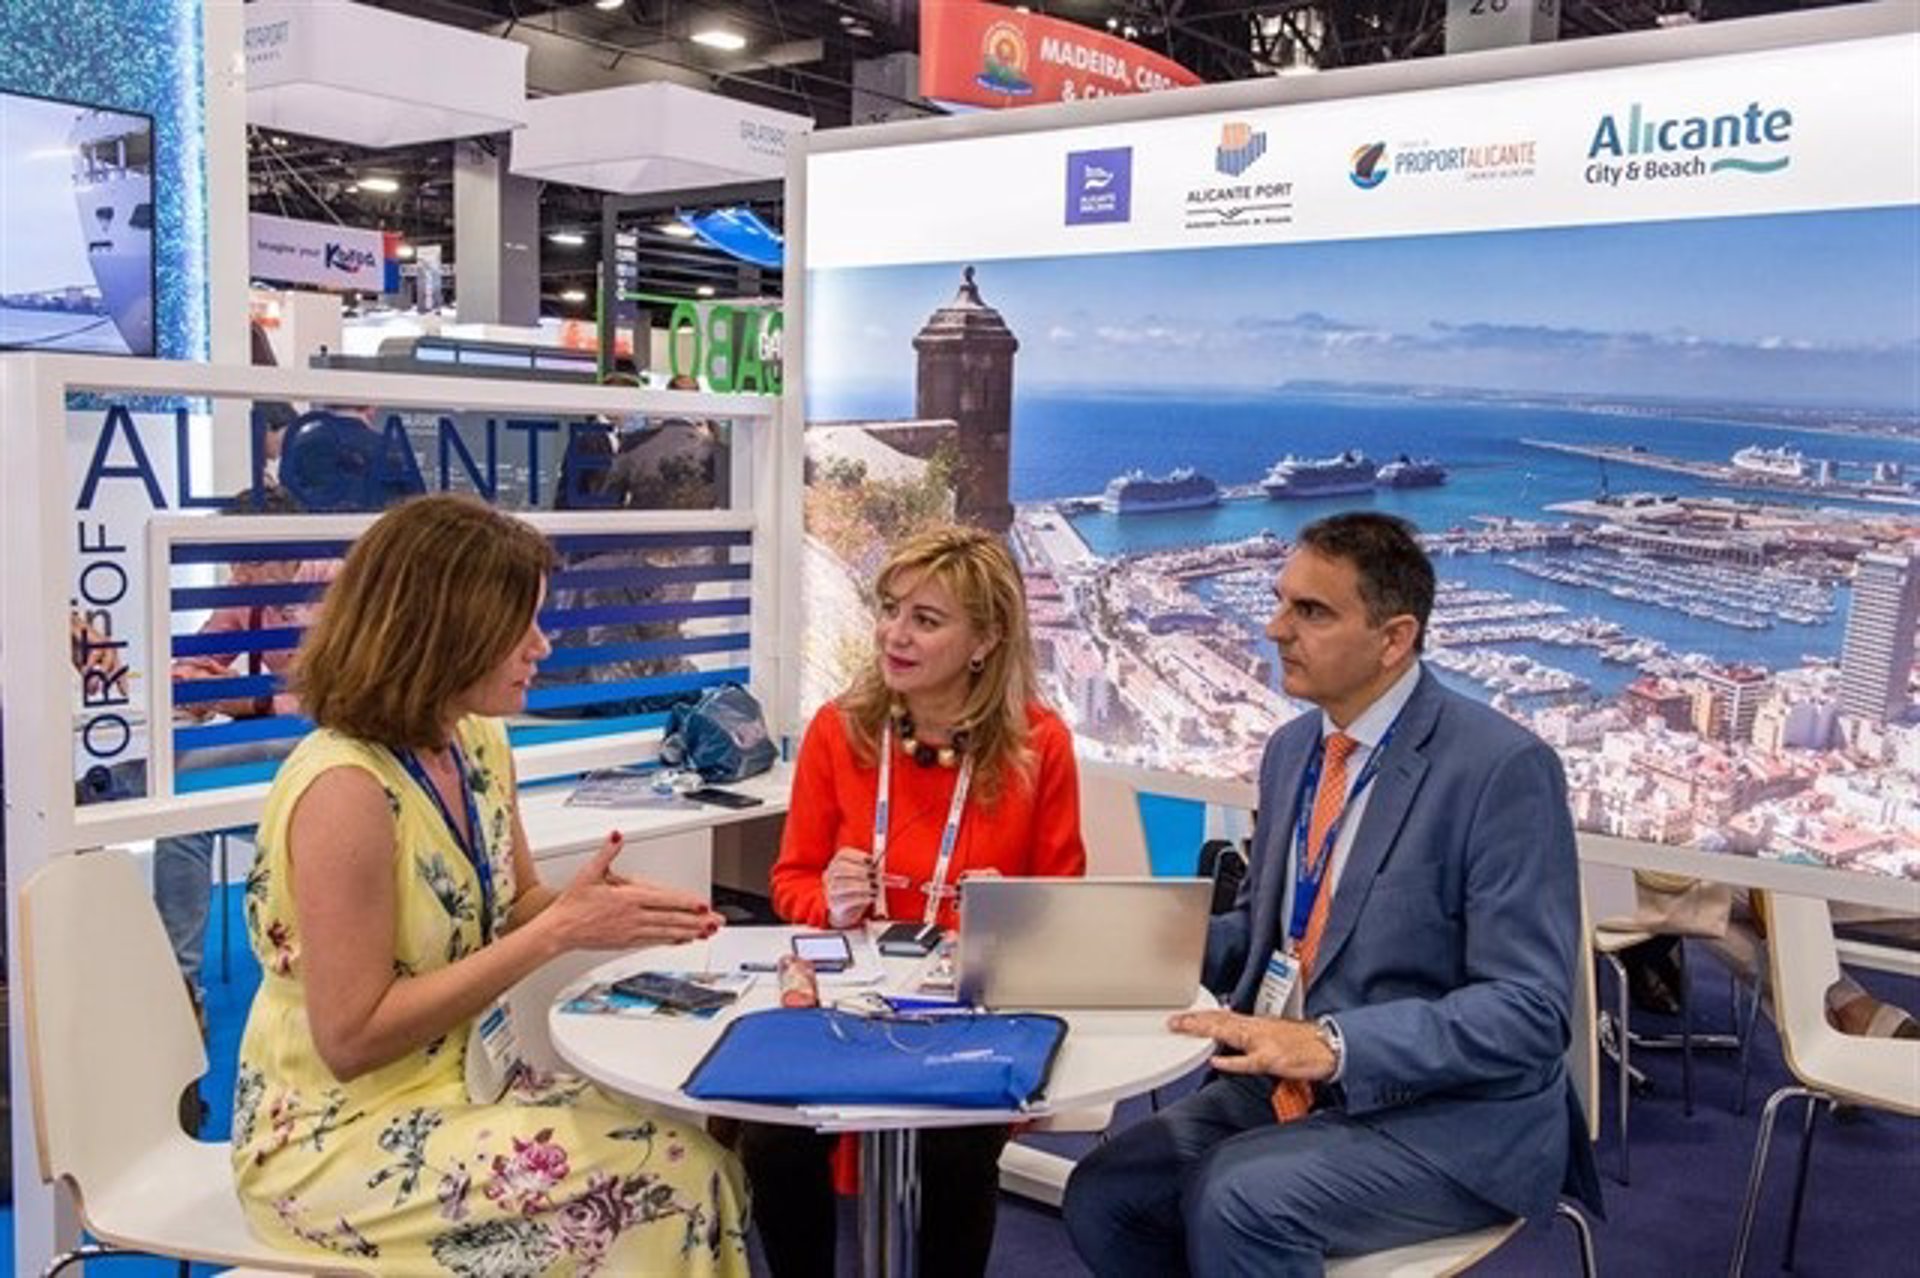 Alicante acude a la Seatrade Cruise Global de Miami para captar navieras como puerto base y más escalas